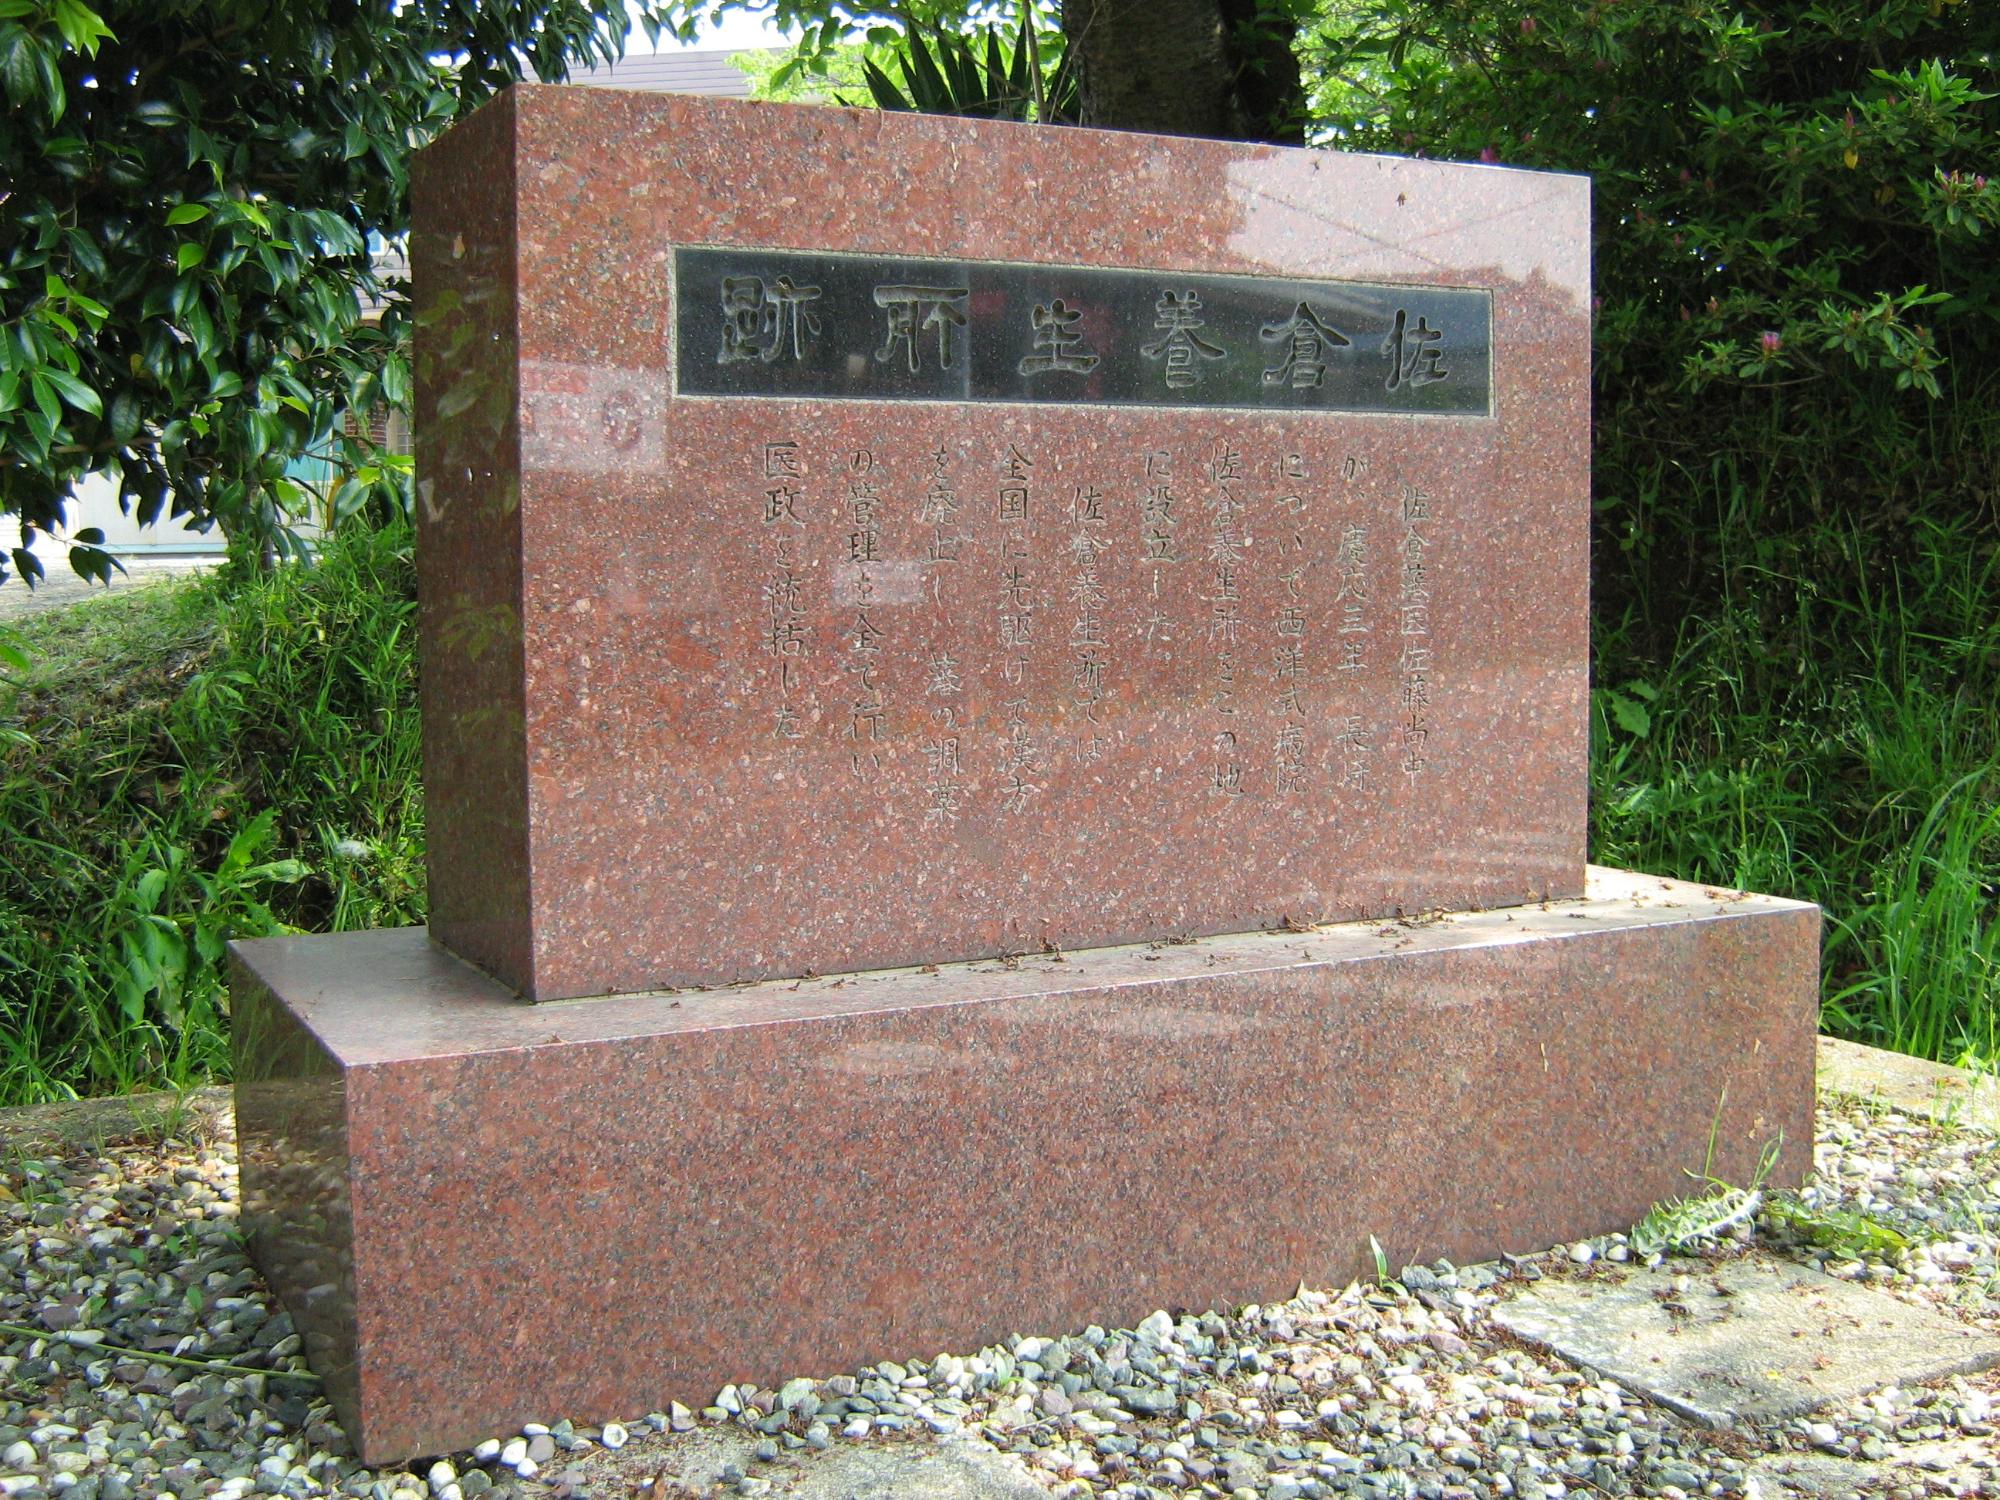 佐倉養生所跡のレンガ色の石碑をアップで写した写真